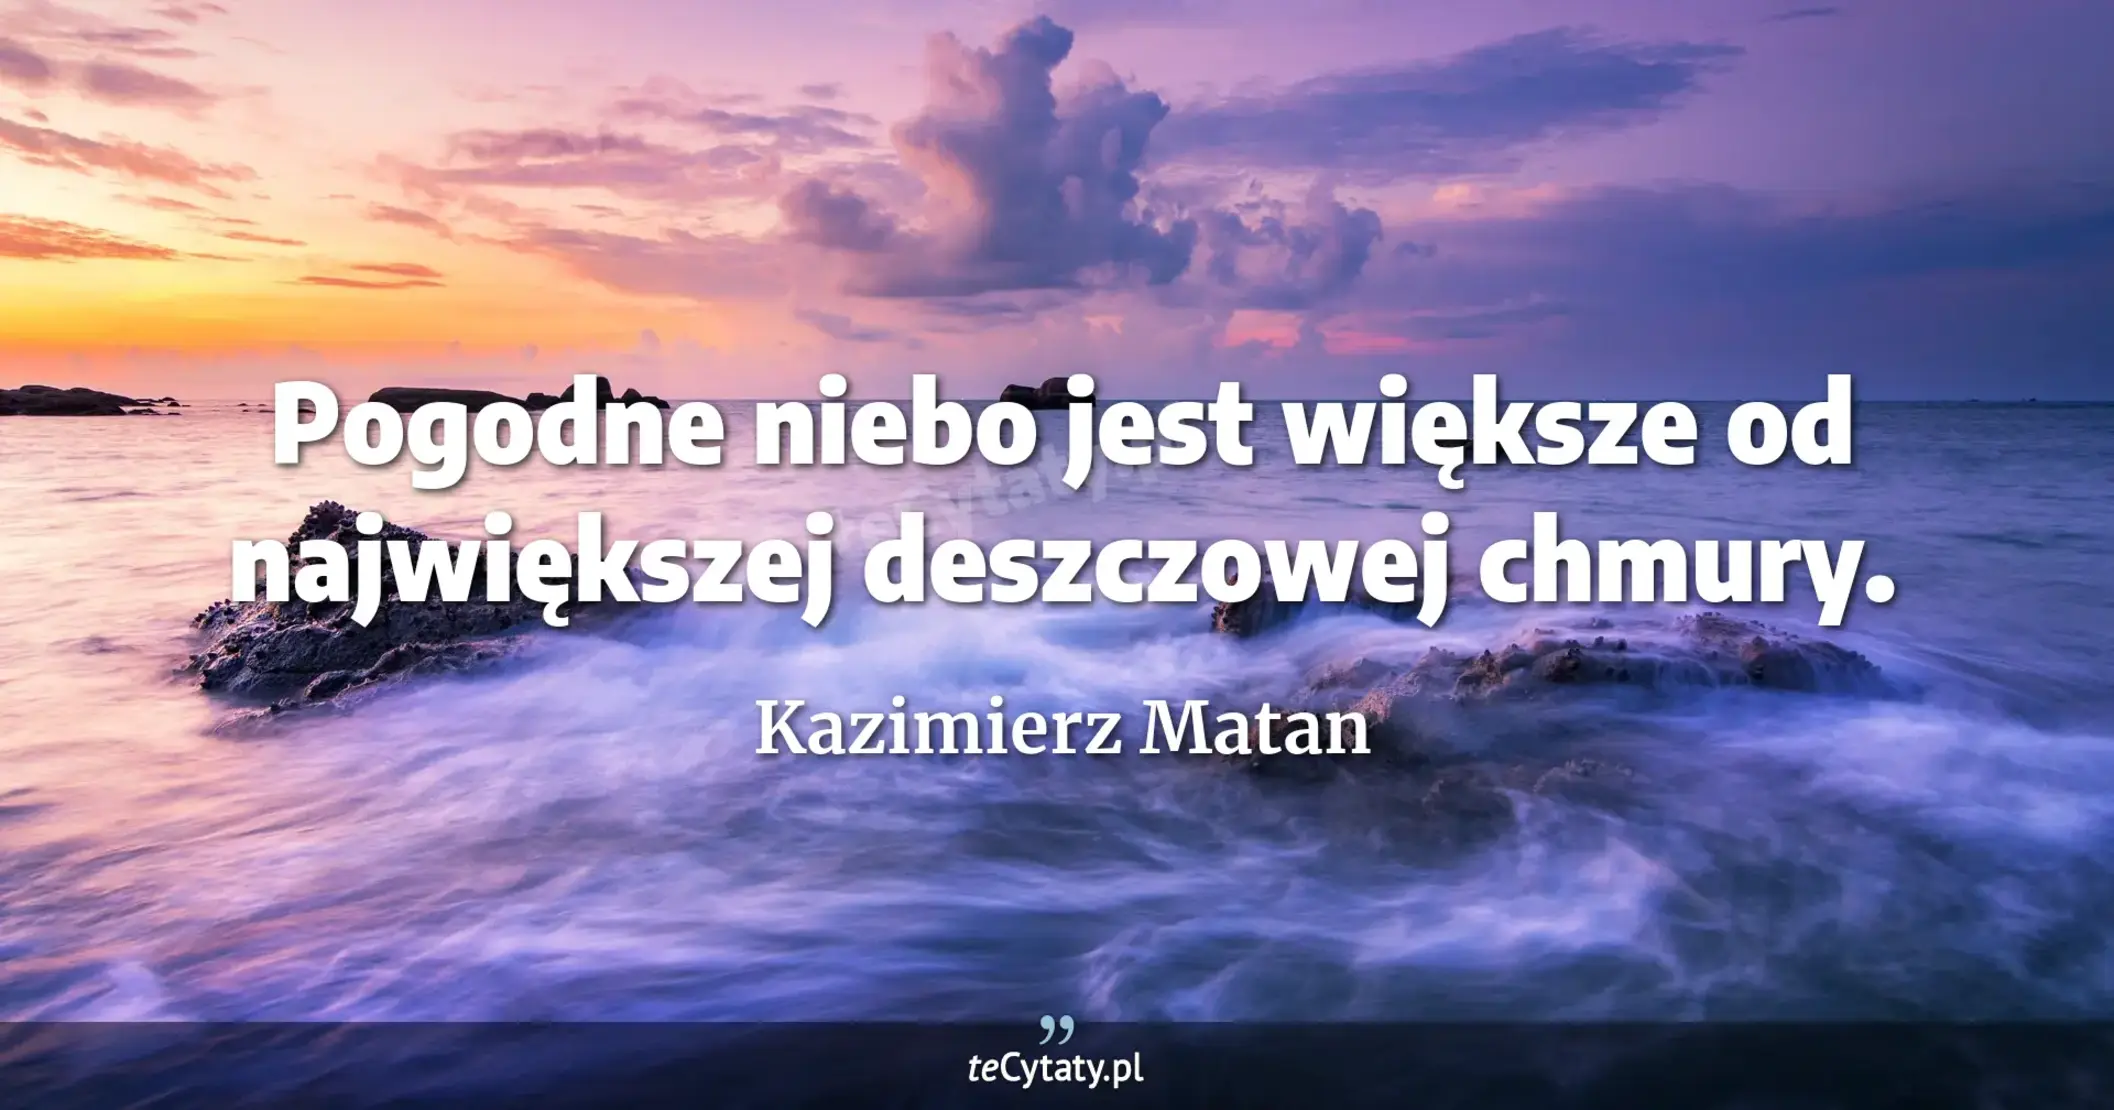 Pogodne niebo jest większe od największej deszczowej chmury. - Kazimierz Matan